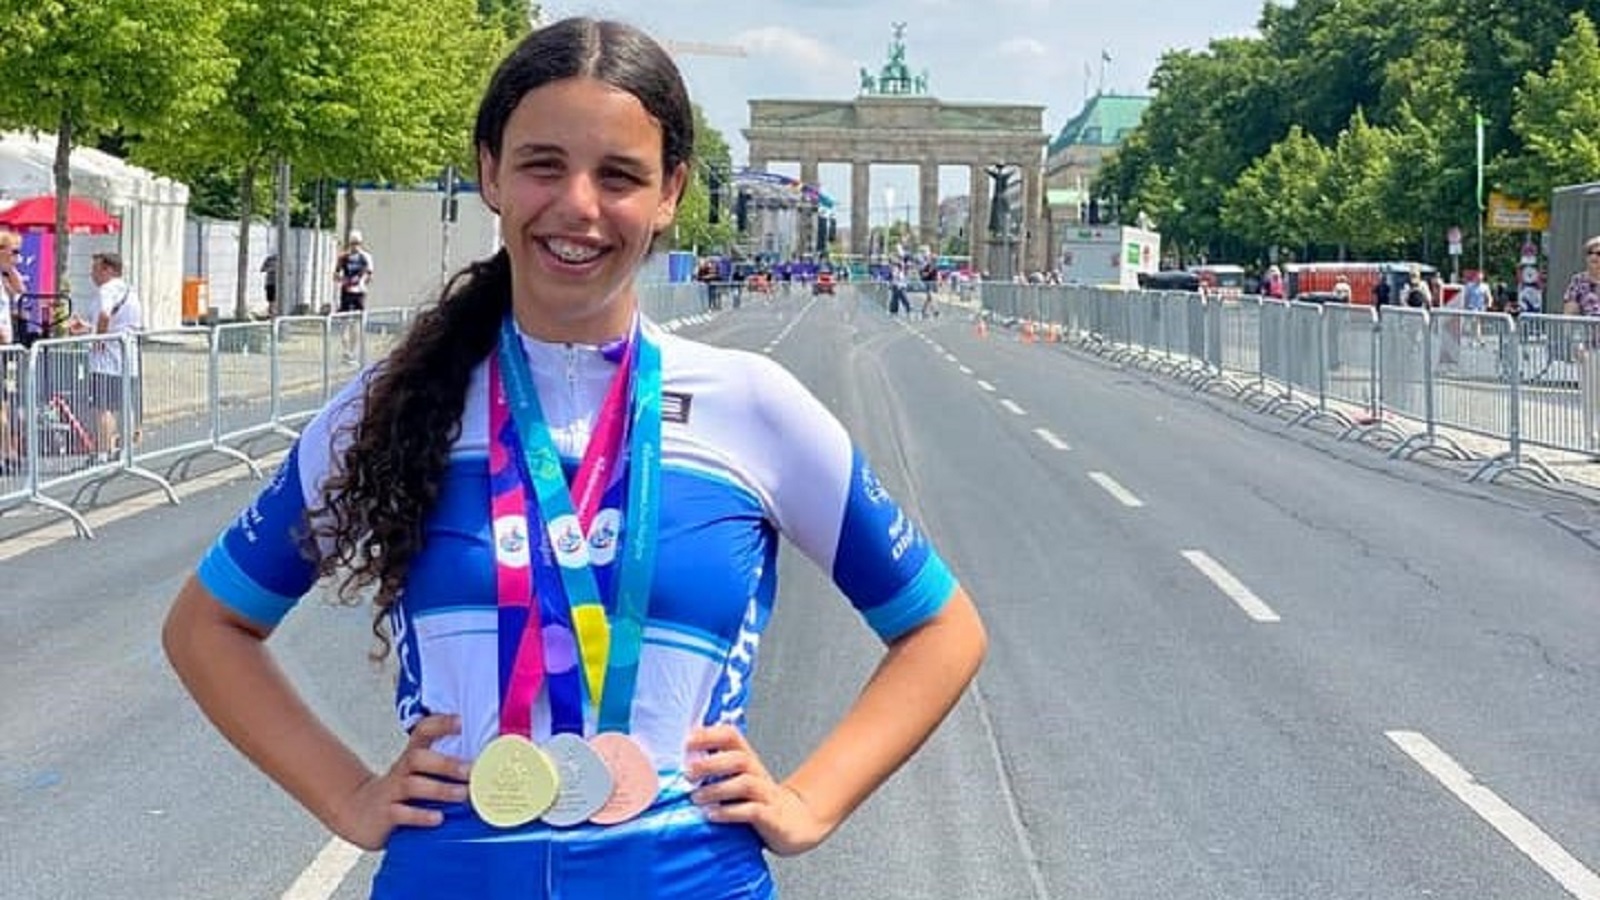 נגה קורן, רוכבת האופניים מבית גוברין מציגה לראווה (ובגאווה!) שלןש מדליות בהן זכתה במסגרת המשחקים